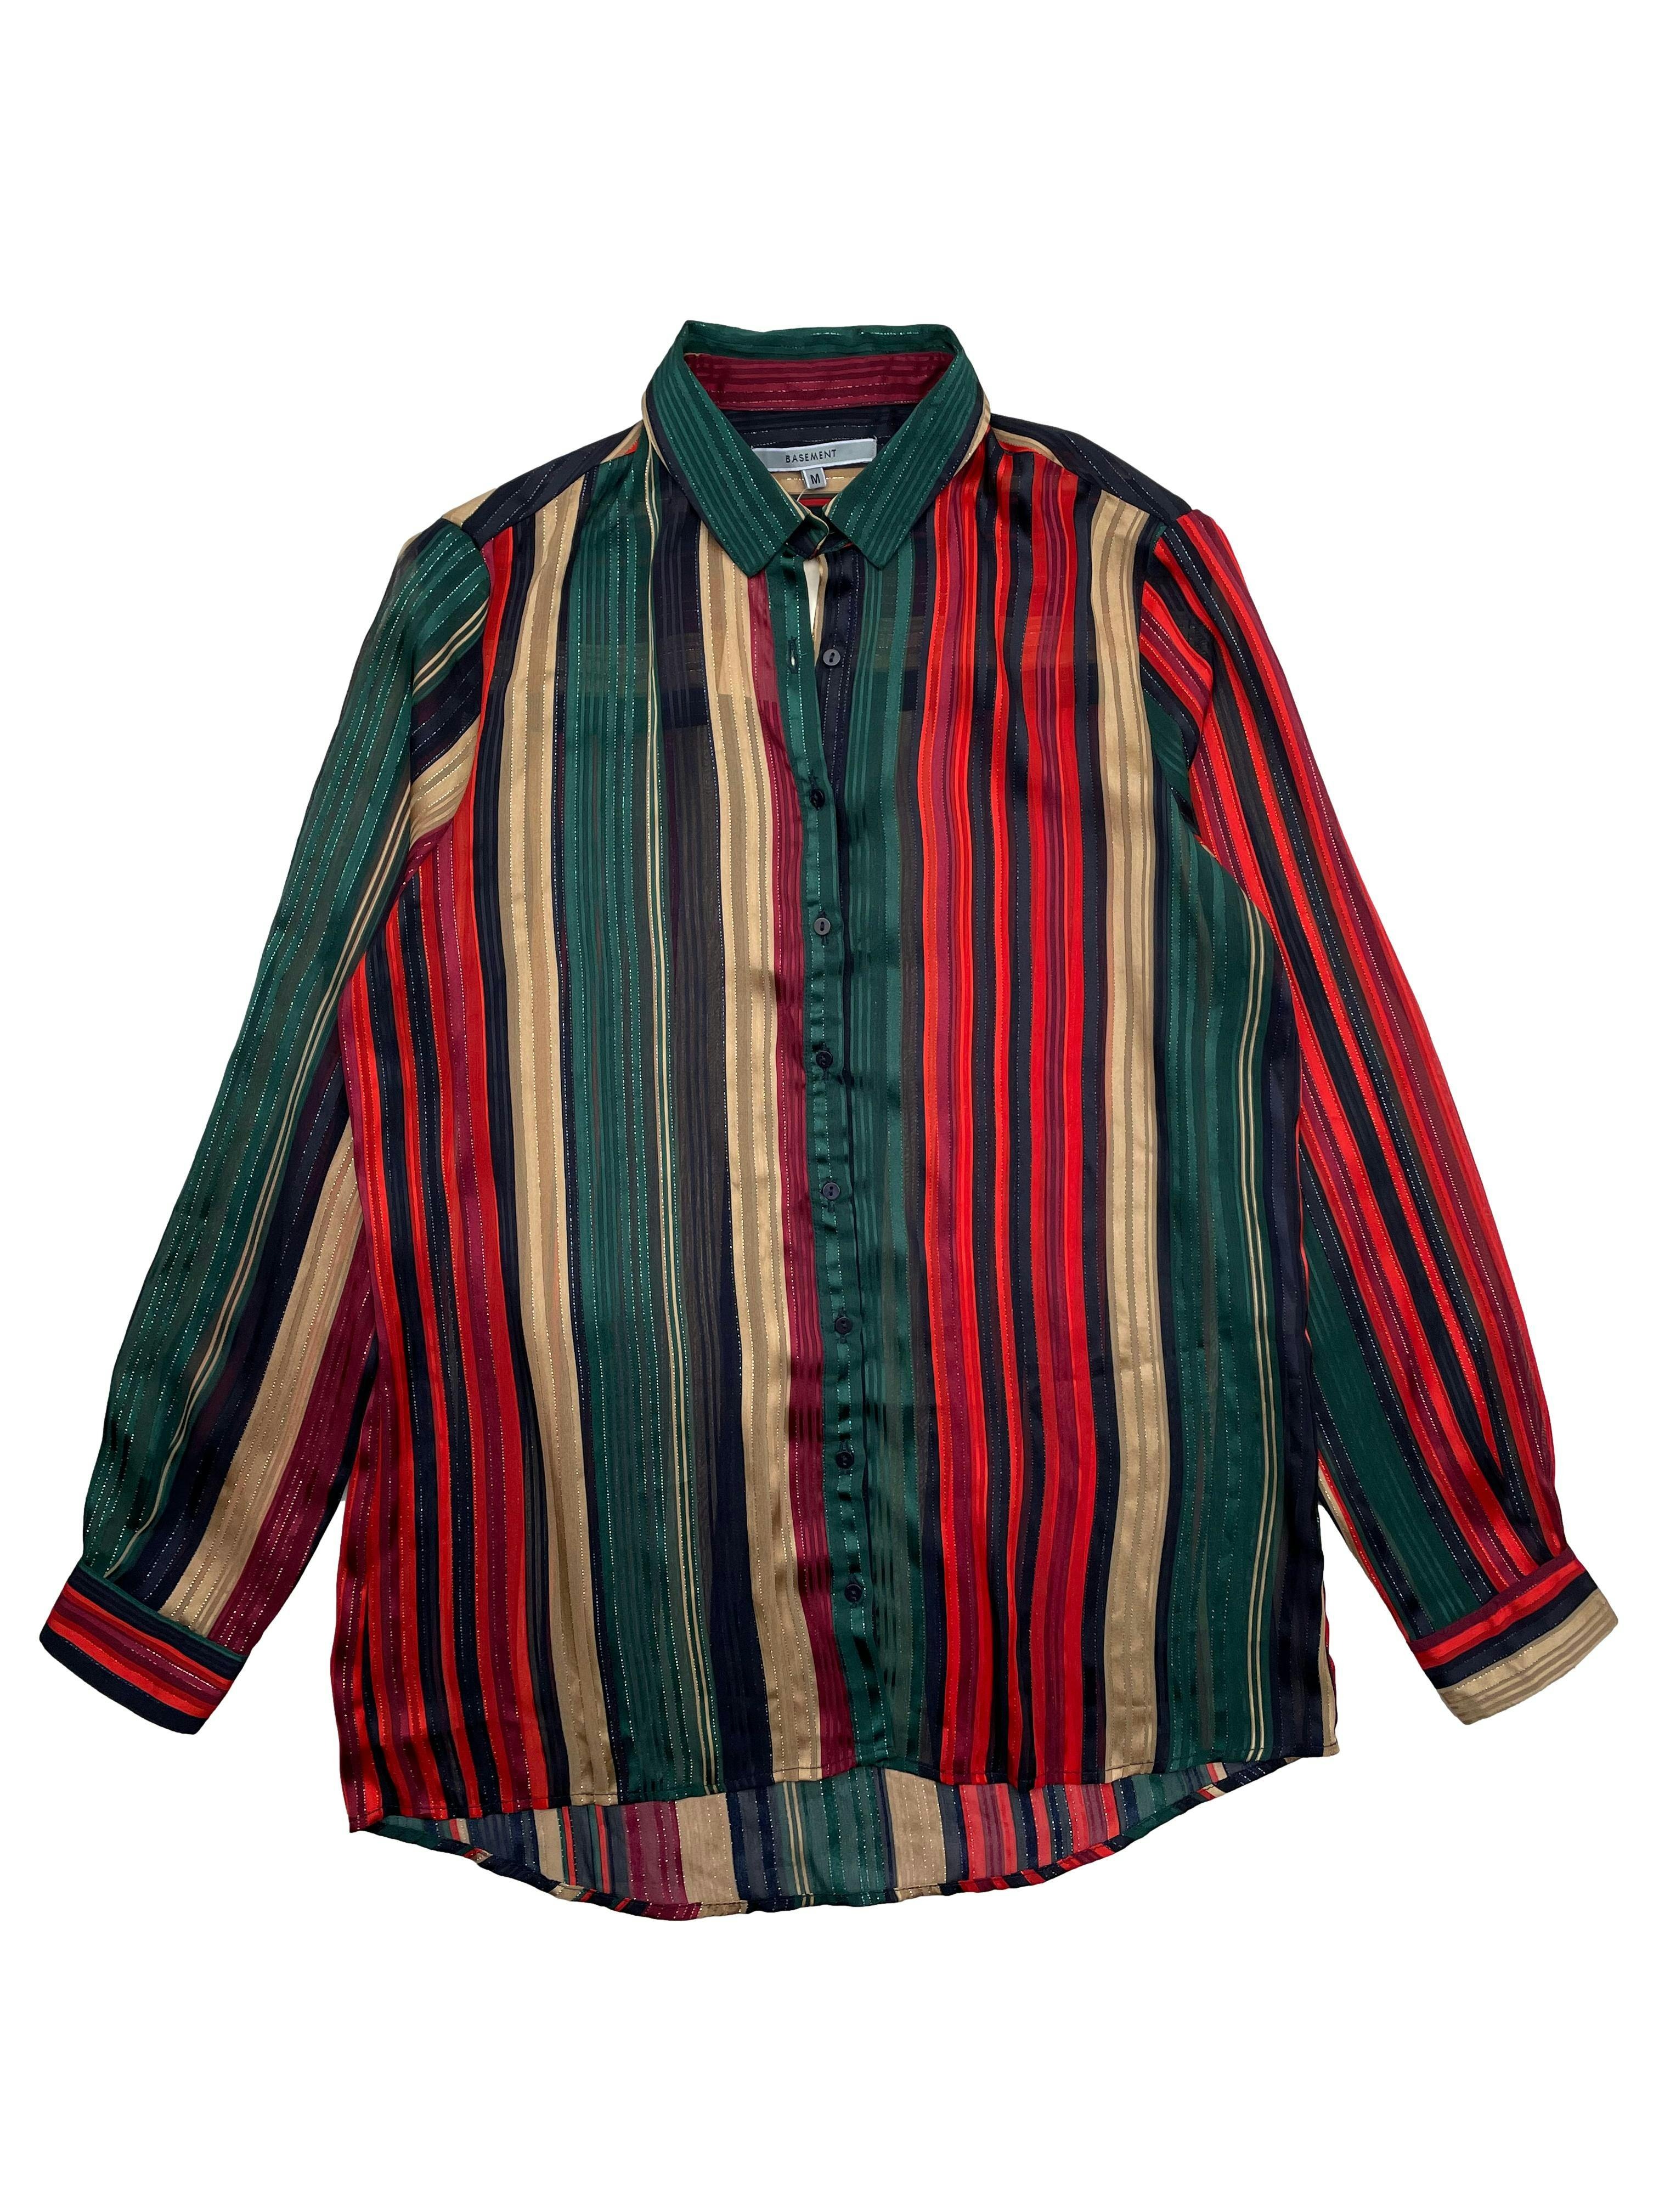 Blusa Basement de gasa, a rayas en tonos verdes, rojos y dorados con hilos metálicos. Busto 106cm, Largo 66cm.